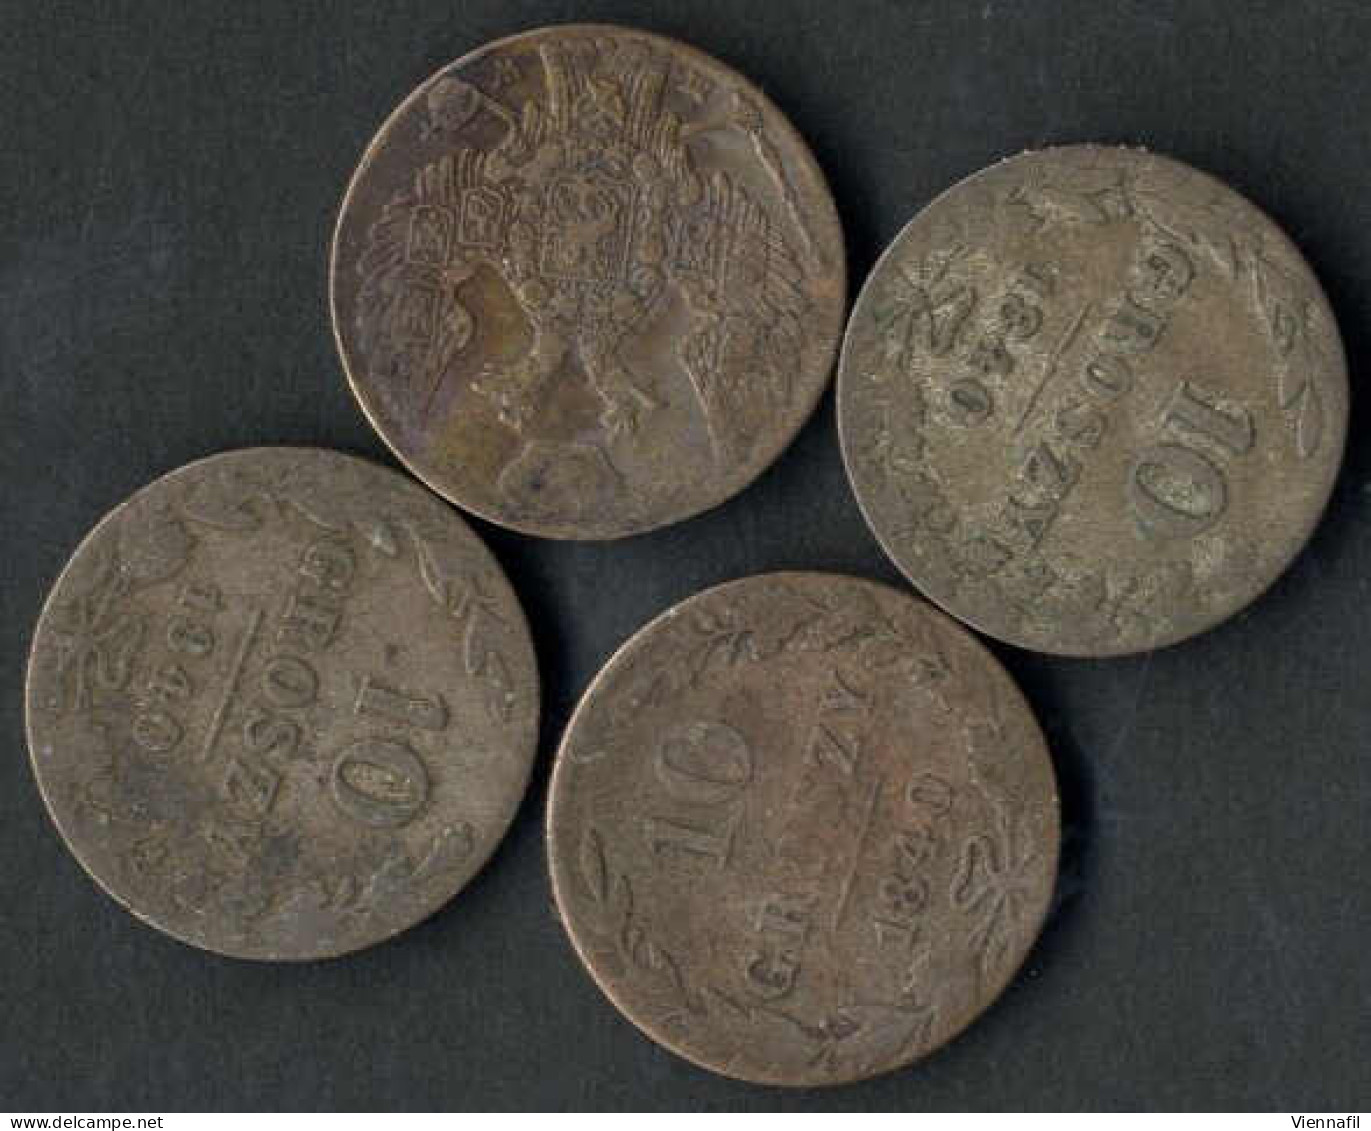 10 Groszy, 1840, Nikolaus I. 1825-55, Lot Mit Sieben Silbermünzen, Vier Mit Patina Schön, Drei Vorzüglich, C.113a - Polen